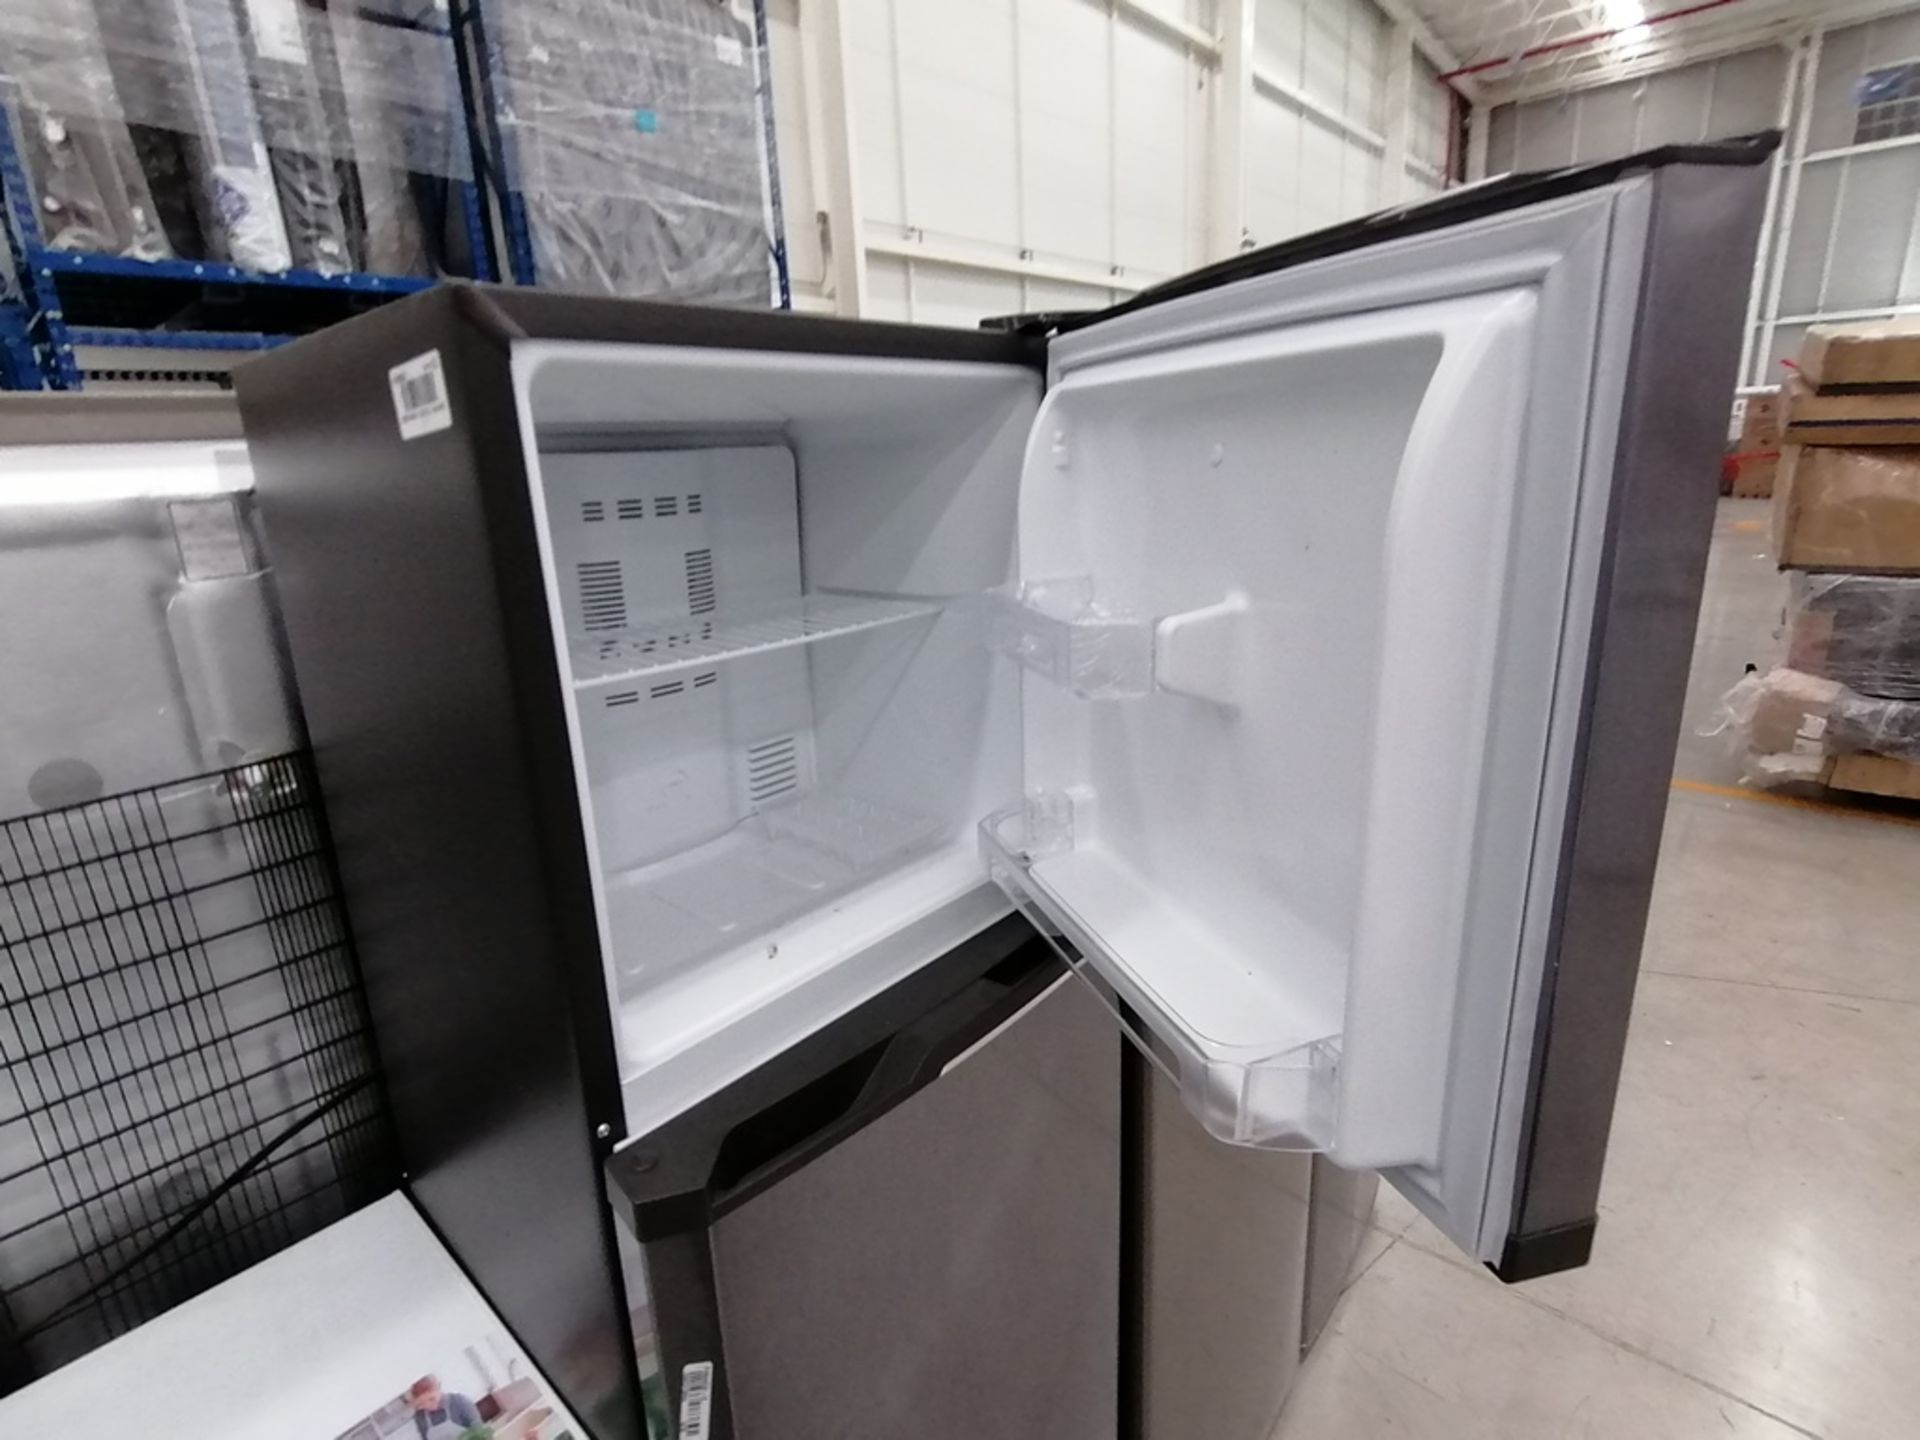 Lote de 2 refrigeradores incluye: 1 Refrigerador, Marca Mabe, Modelo RMA1025VNX, Serie 2110B623189, - Image 4 of 17